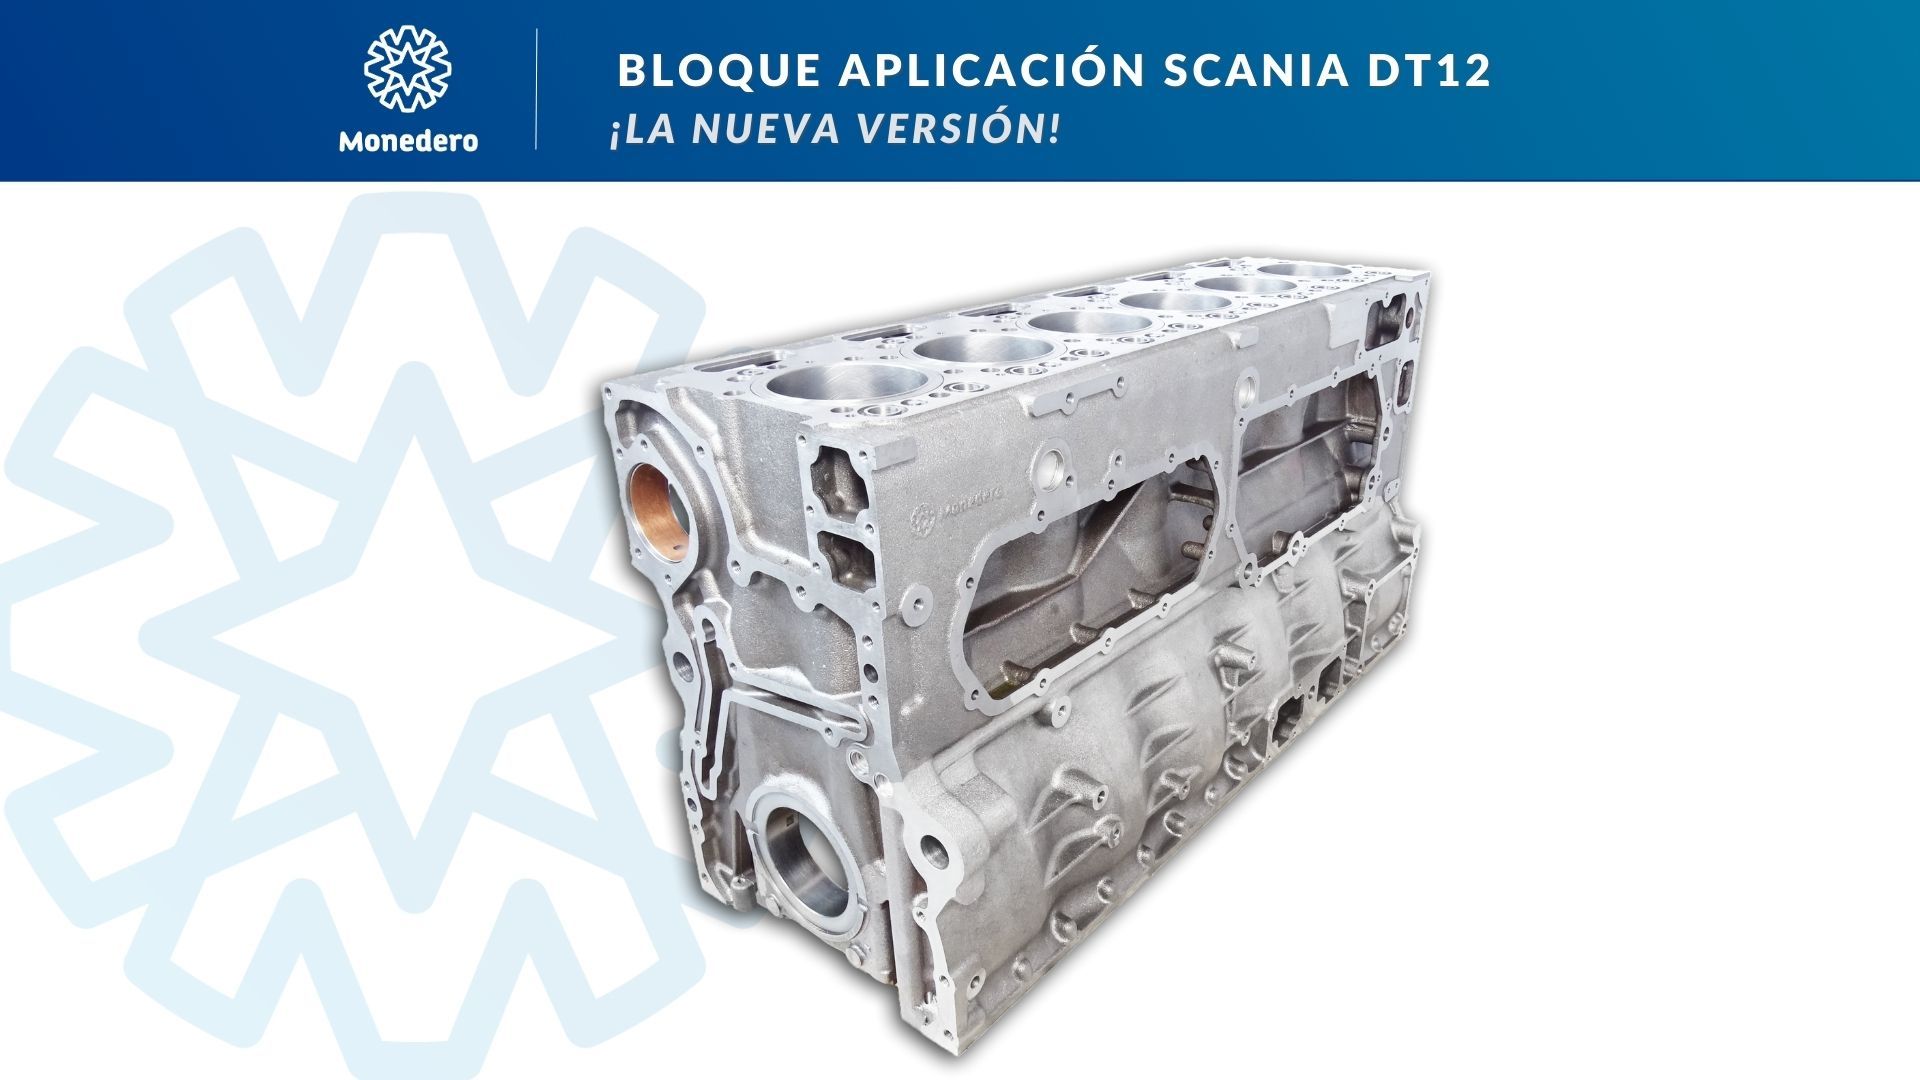 Nuevo bloque Scania DT12